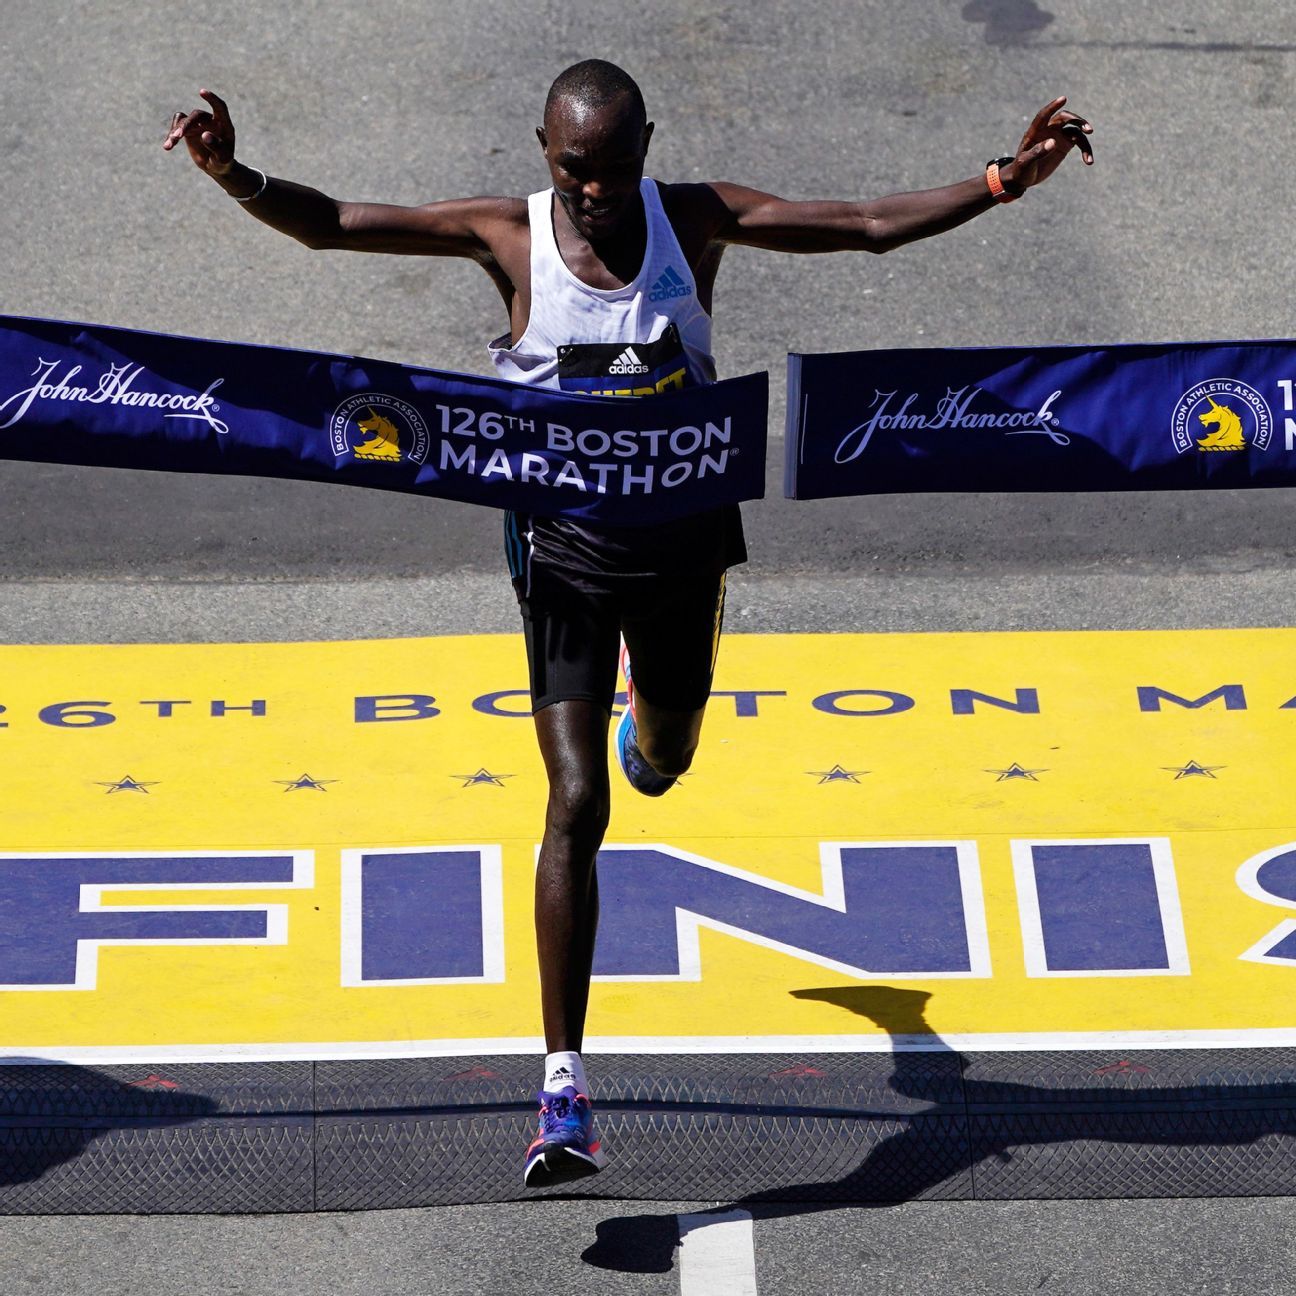 Pelari Kenya Evans Chebet memenangkan Boston Marathon 2022 dalam perlombaan kembali ke Hari Patriot